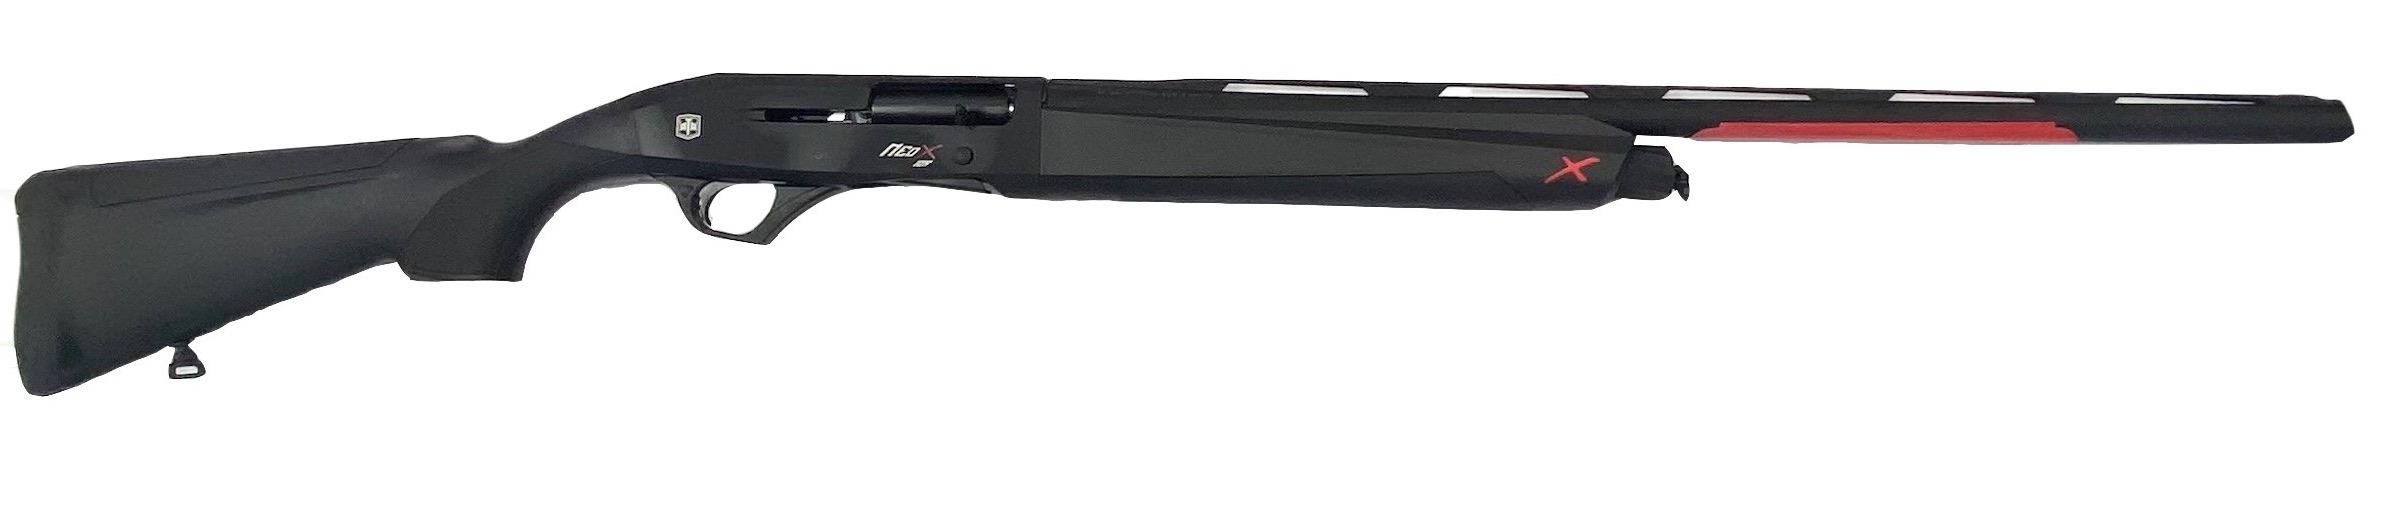 Гладкоствольное ружье ATA ARMS Moд. NEO X SYNTHETIC BLACK (полуавтоматическое)